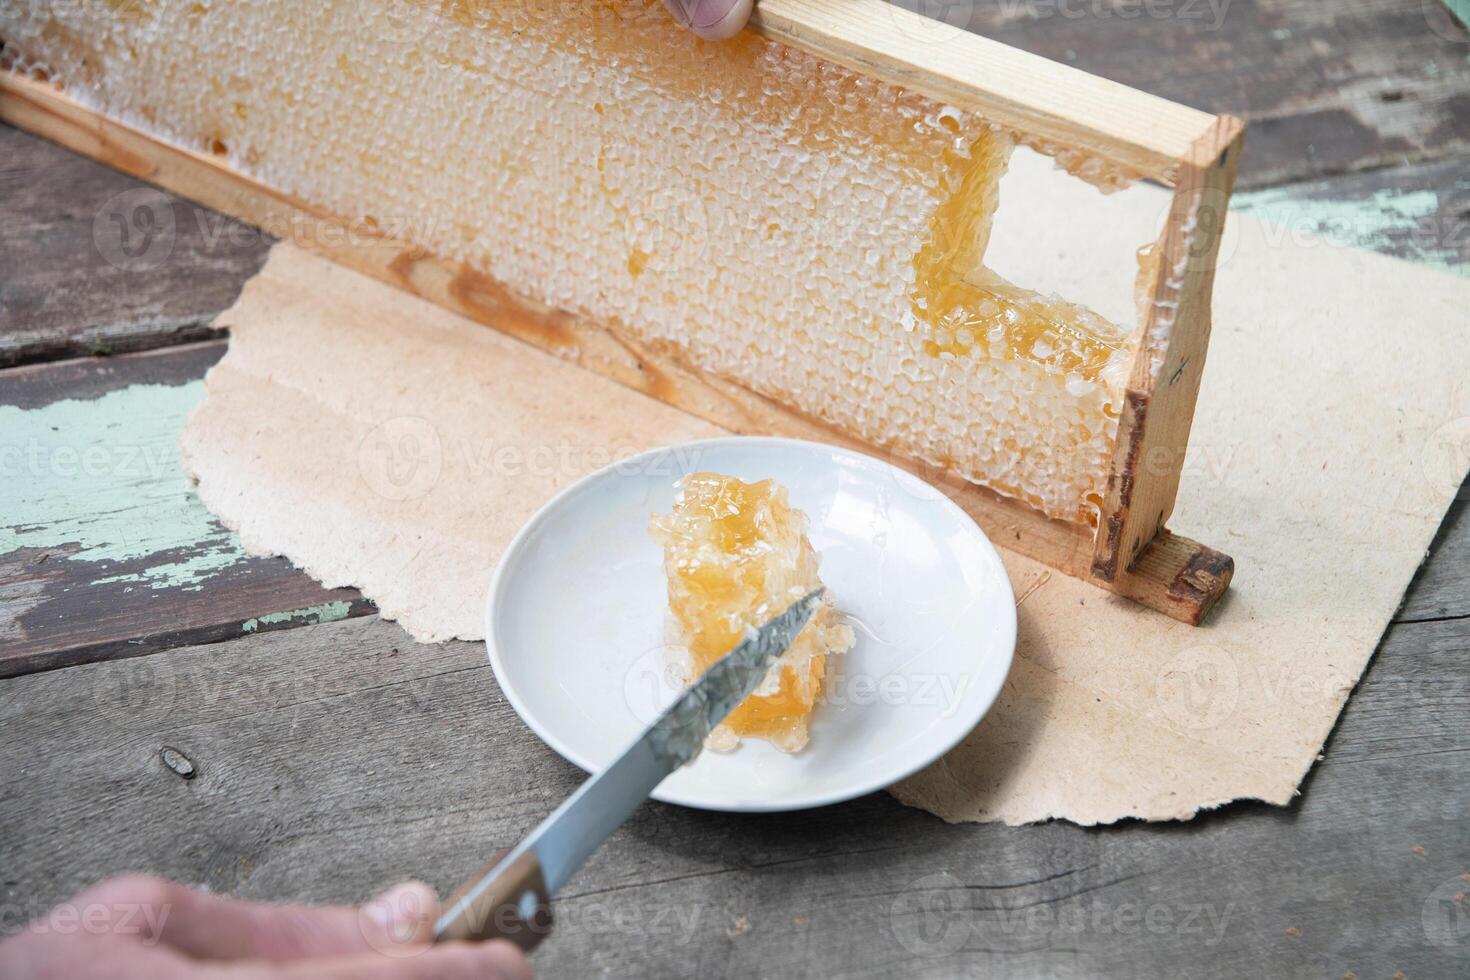 homme coupes nids d'abeille de une mon chéri Cadre avec une couteau pour en mangeant pour thé, mon chéri dans nids d'abeille est bien pour le santé photo